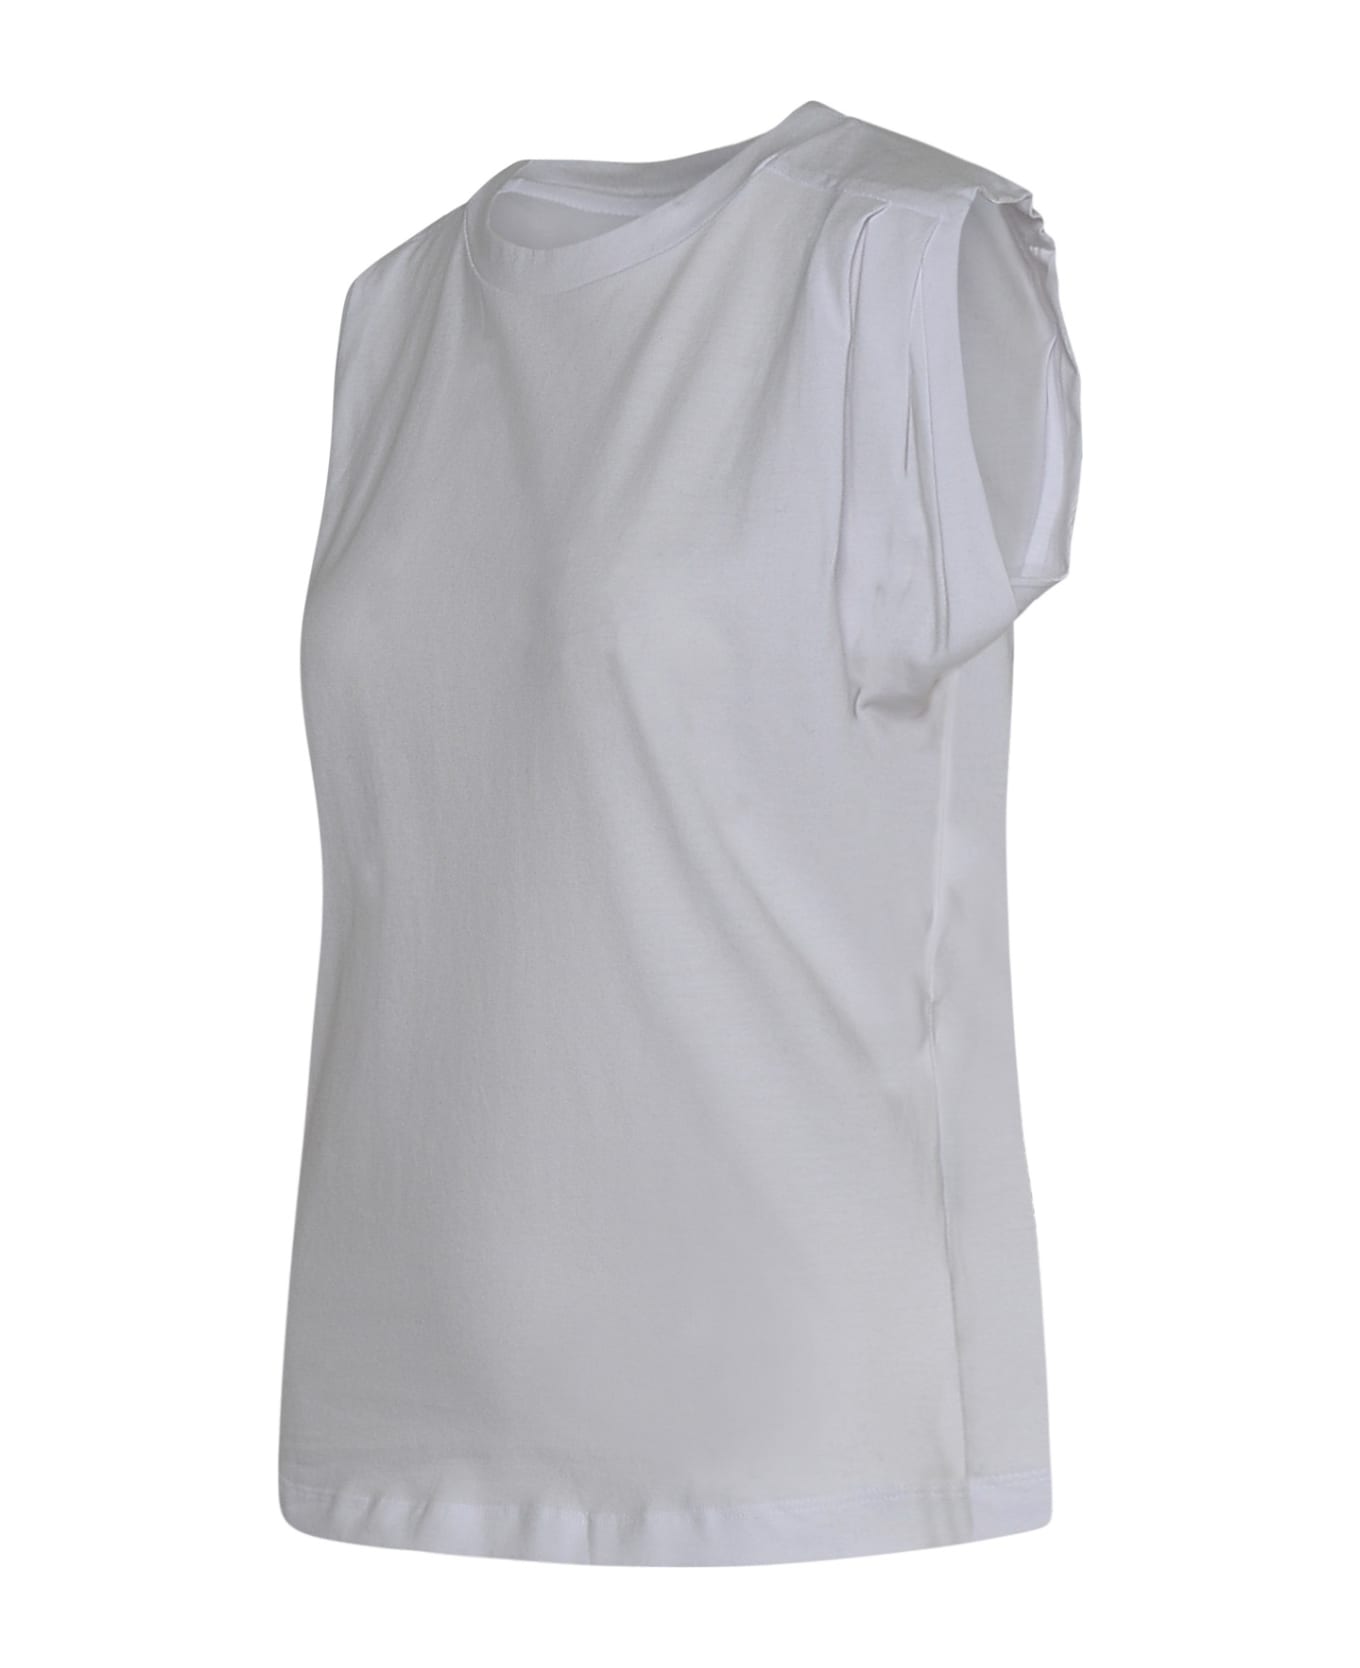 Isabel Marant Zutti T-shirt - white